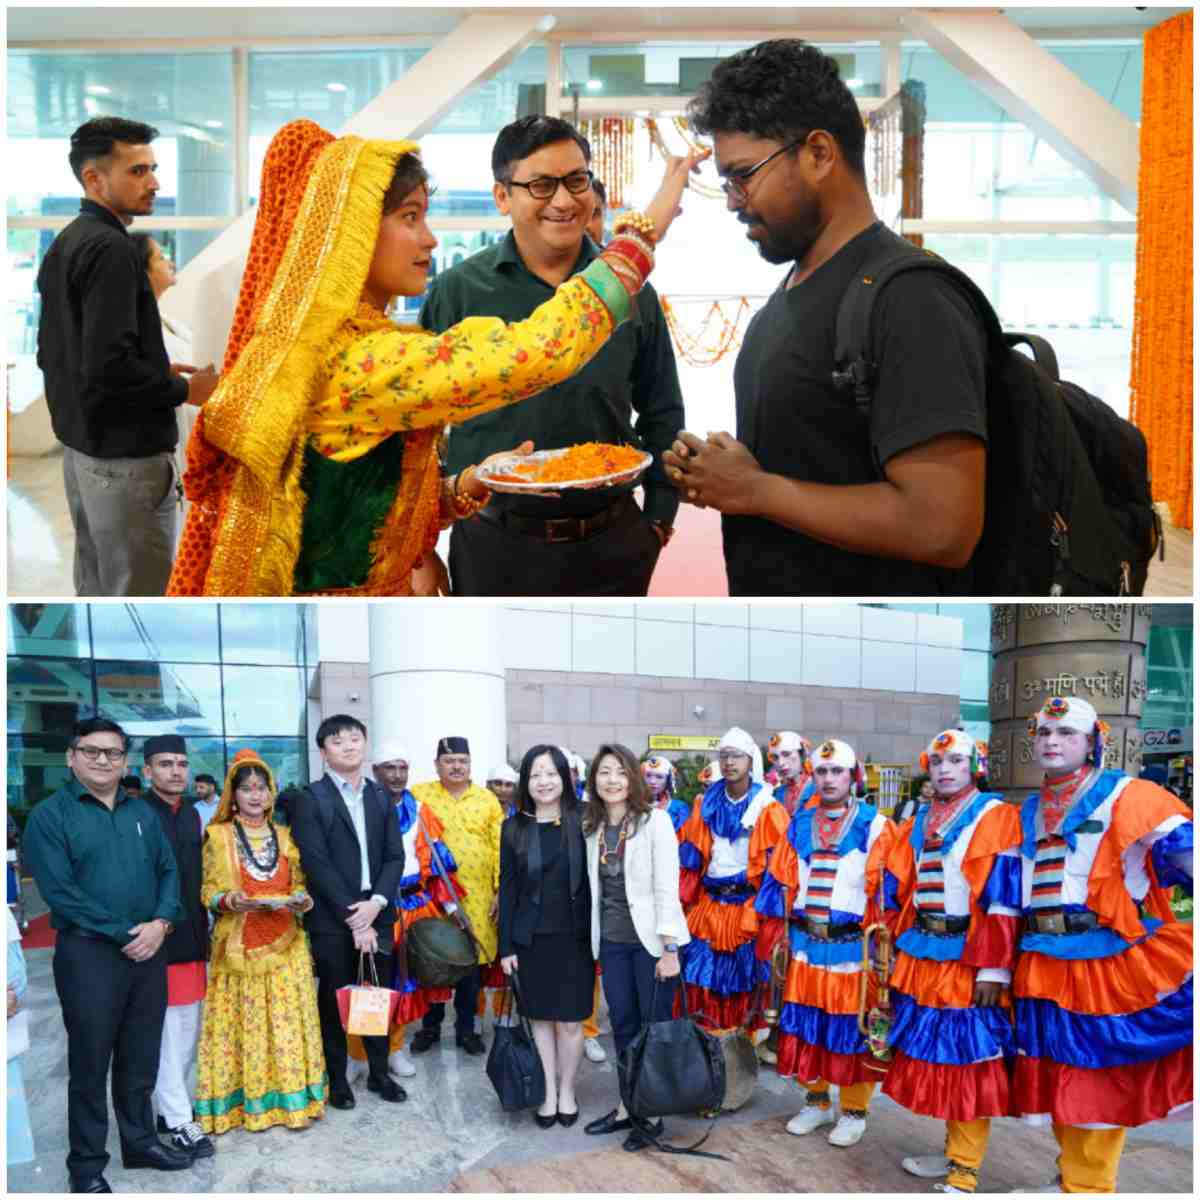 जौलीग्रांट एयरपोर्ट पर जी 20 सम्मेलन में प्रतिभाग करने पहुंचे प्रतिनिधिमंडल के सदस्यों का ढोल दमाऊ के साथ भव्य स्वागत